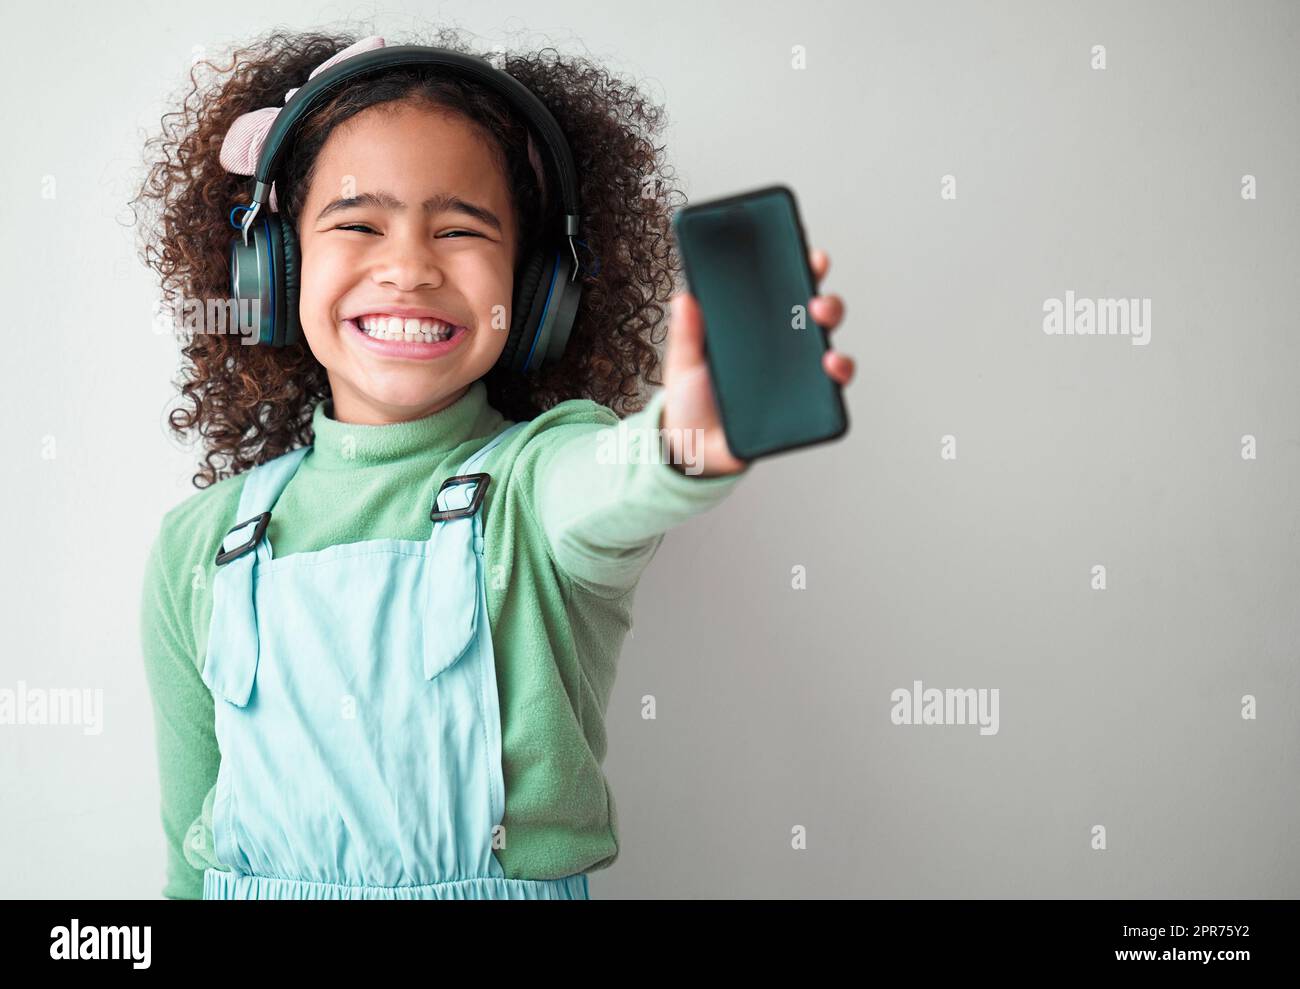 En cada gesto, dignidad y amor. Fotografía de una niña de pie sola y escuchando música a través de los auriculares sobre un fondo gris. Foto de stock